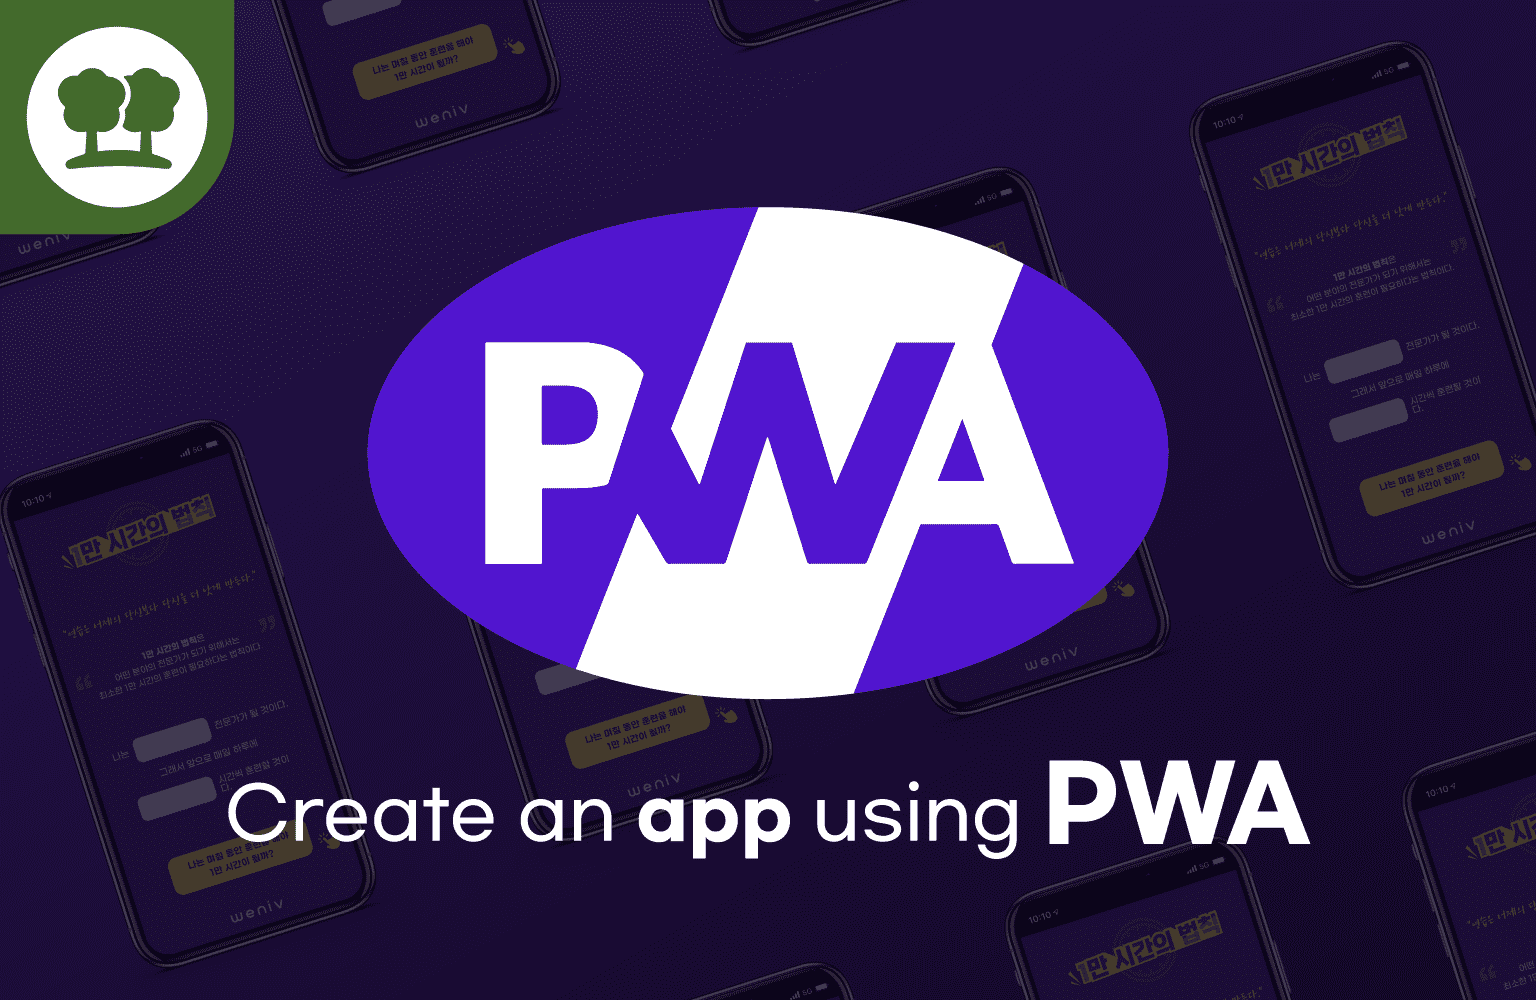 PWA를 통한 1만 시간의 법칙 앱 제작!